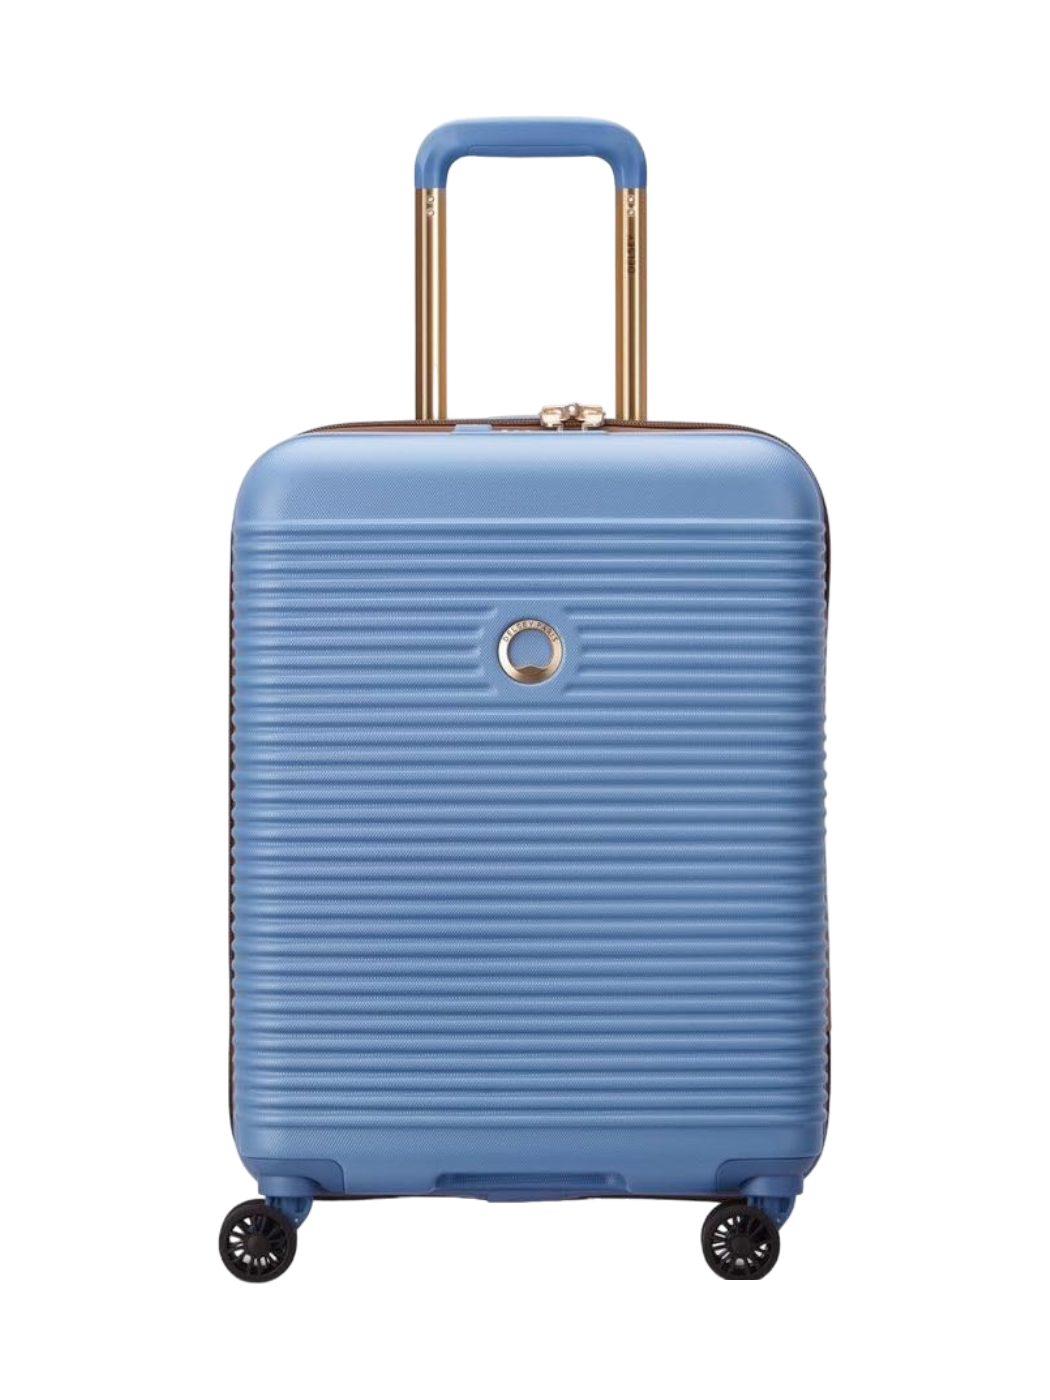 vous partez en vacances ? voici les 15 valises cabine les plus mode de l'été